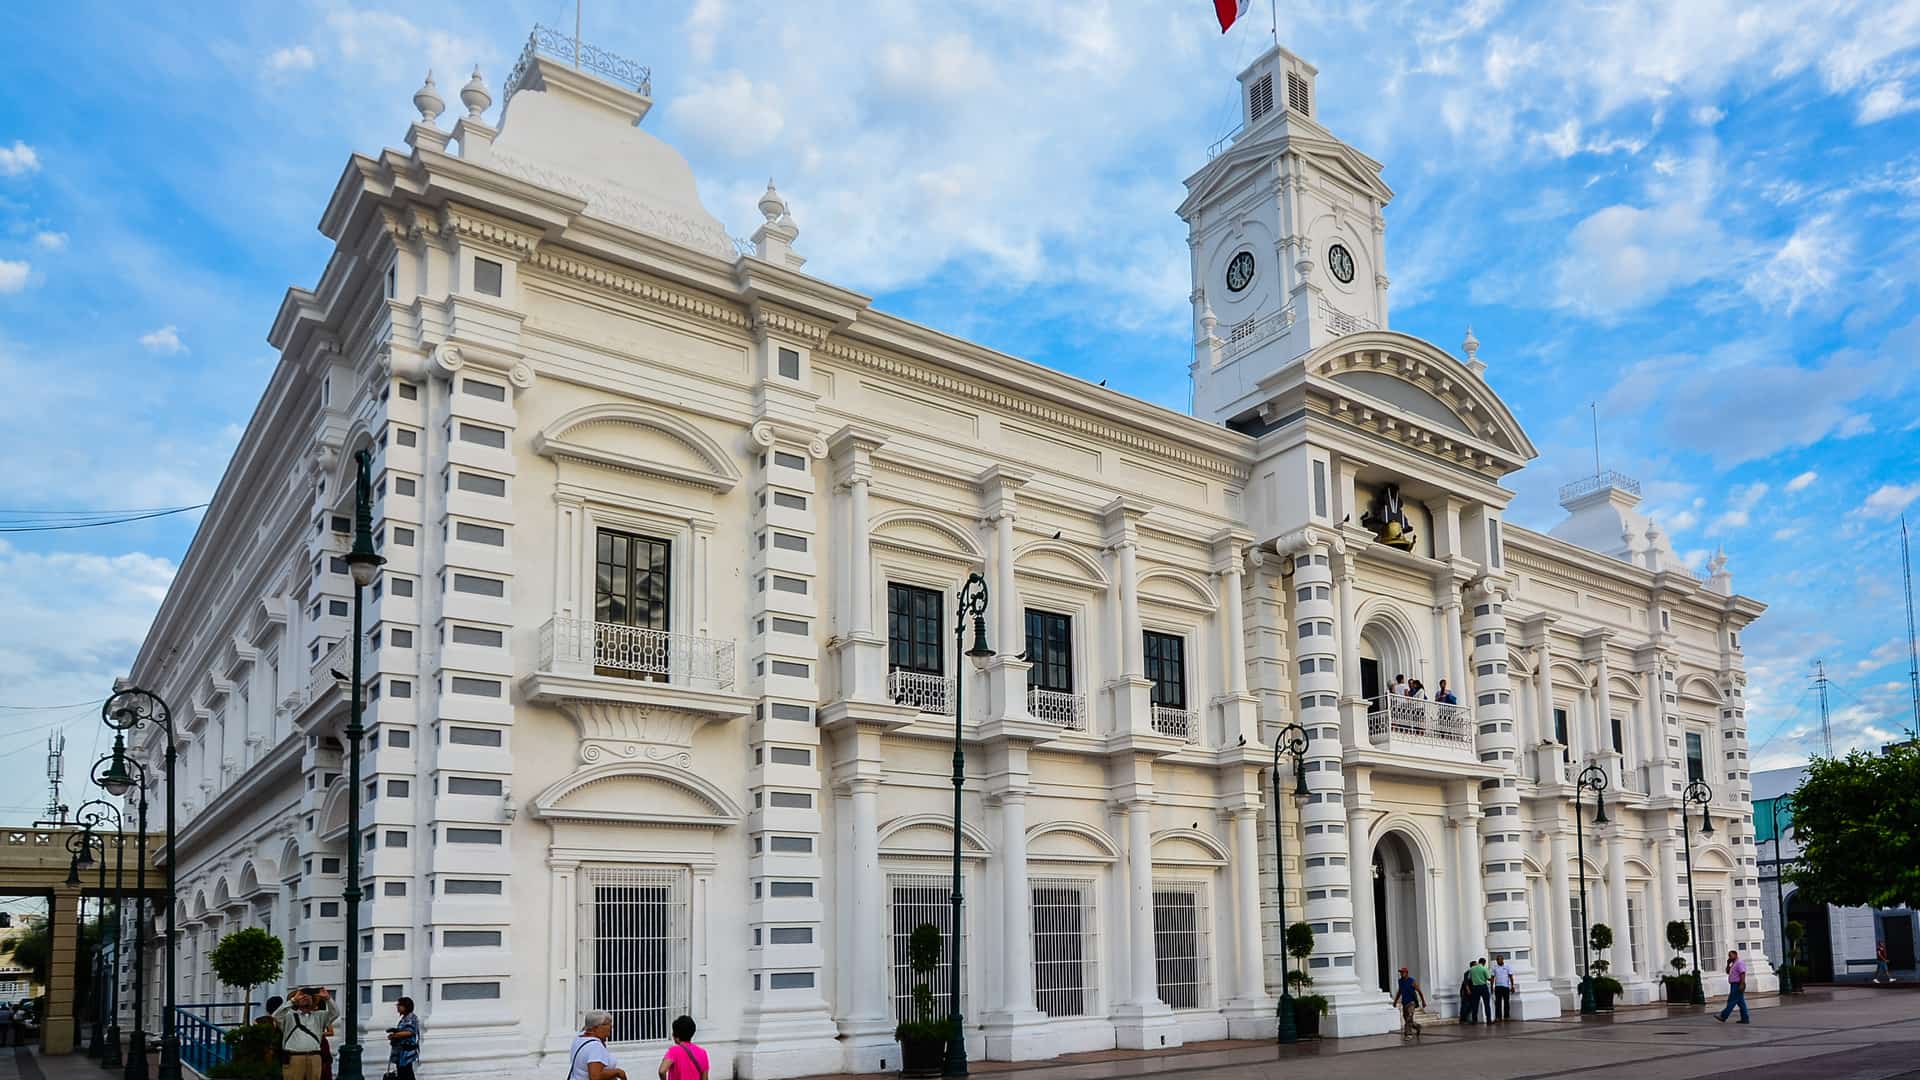 Palacio del gobernador de la ciudad de hermosillo de mexico donde se pueden encontrar sucursales de la empresa megacable